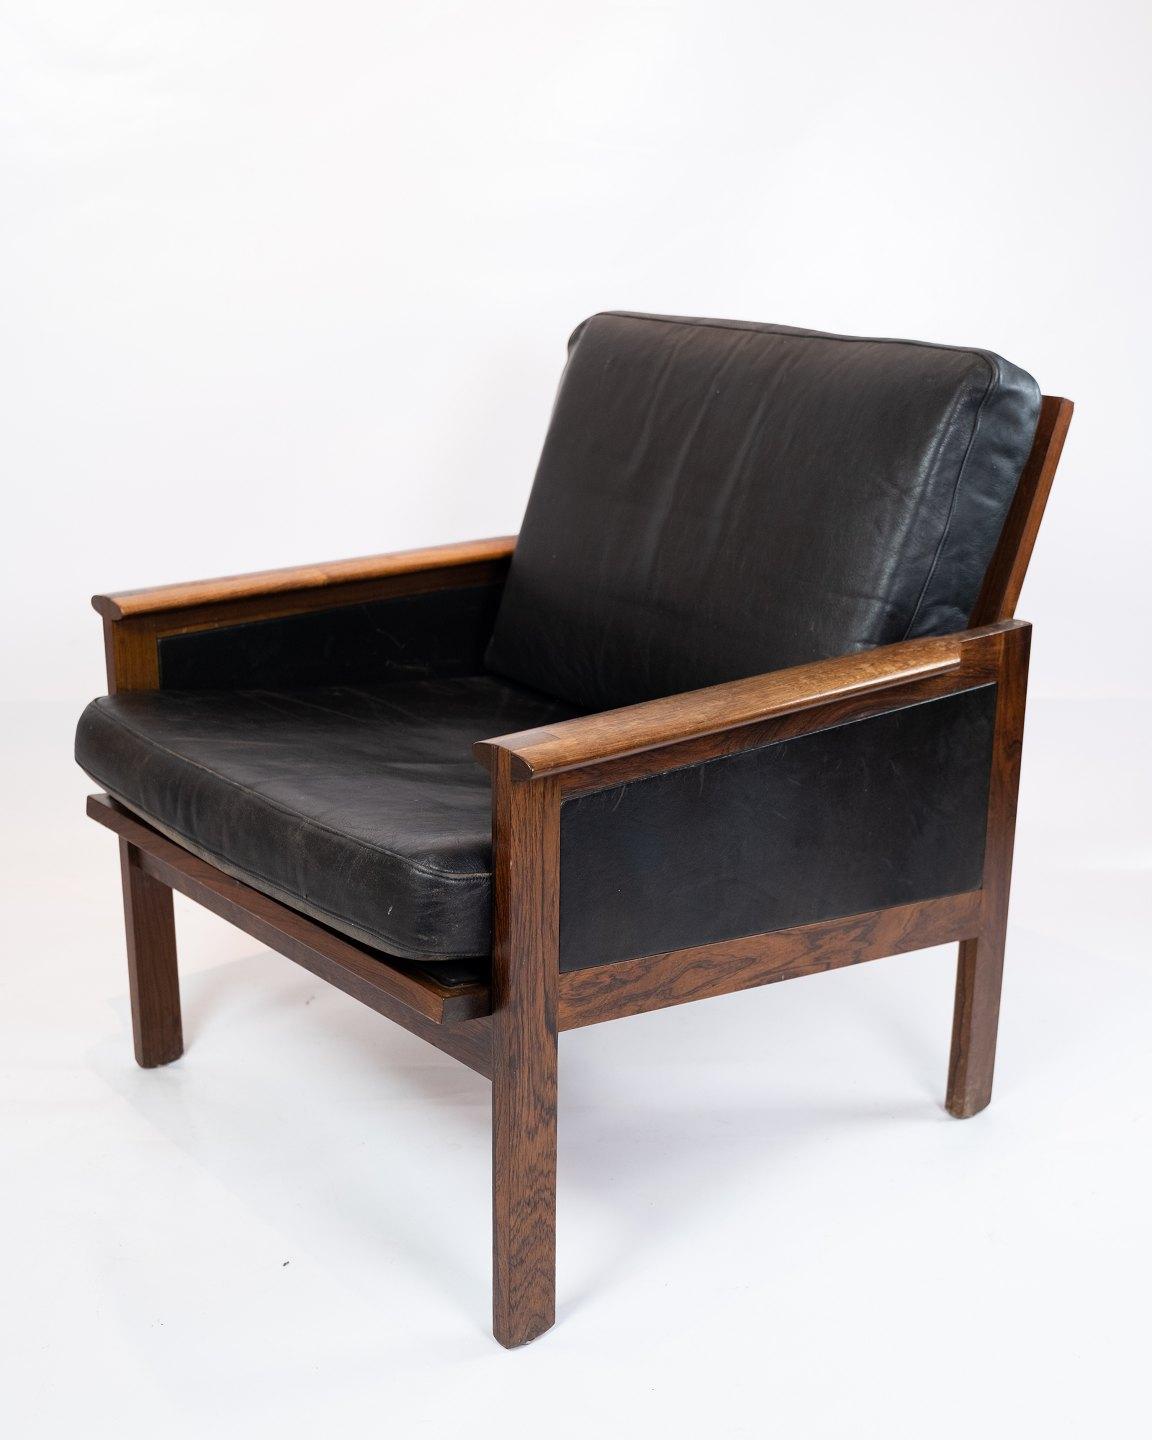 Ein Paar Sessel, Modell Capella, aus Palisanderholz und schwarzem Eleganz-Leder, entworfen von Illum Wikkelsø in den 1960er Jahren. Das Paar ist in tollem Vintage-Zustand.
  